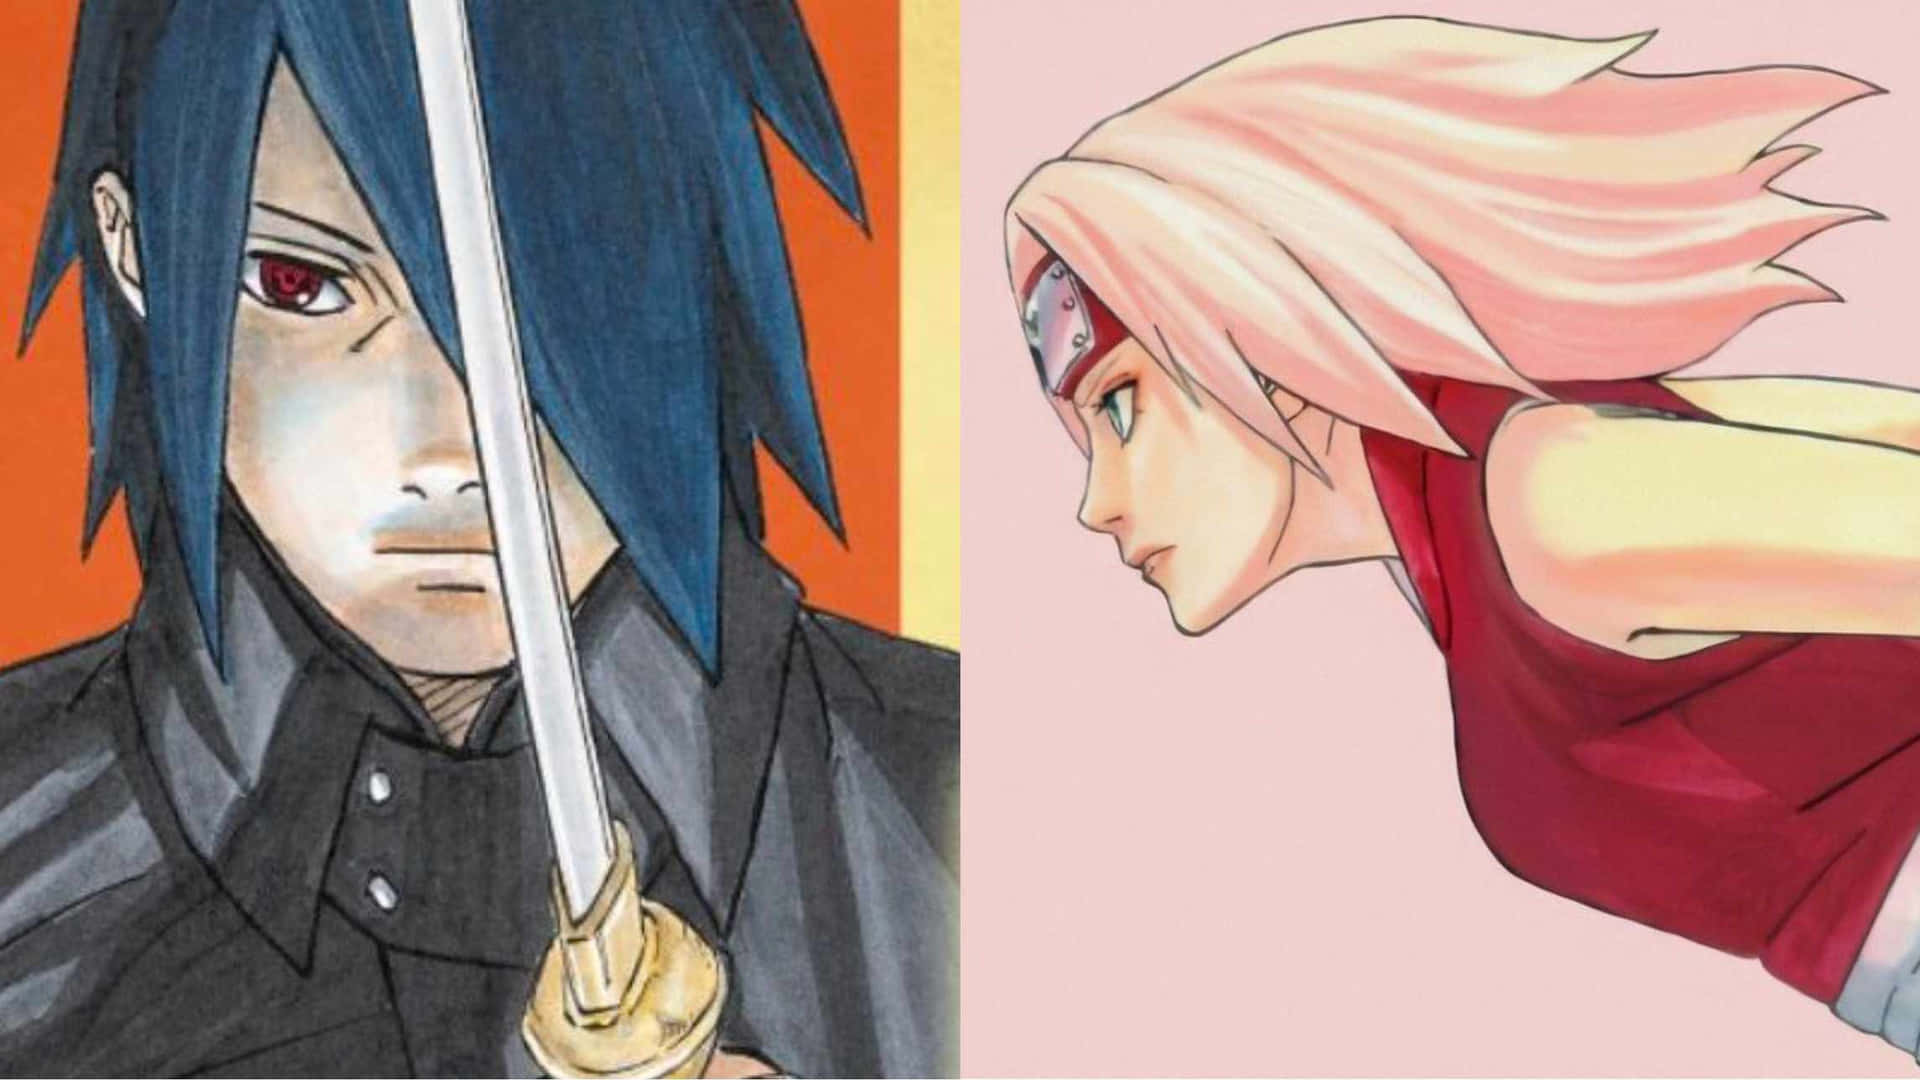 Sasukeuchiha, El Ninja Y Protagonista Principal De La Serie De Manga Japonesa, Naruto.